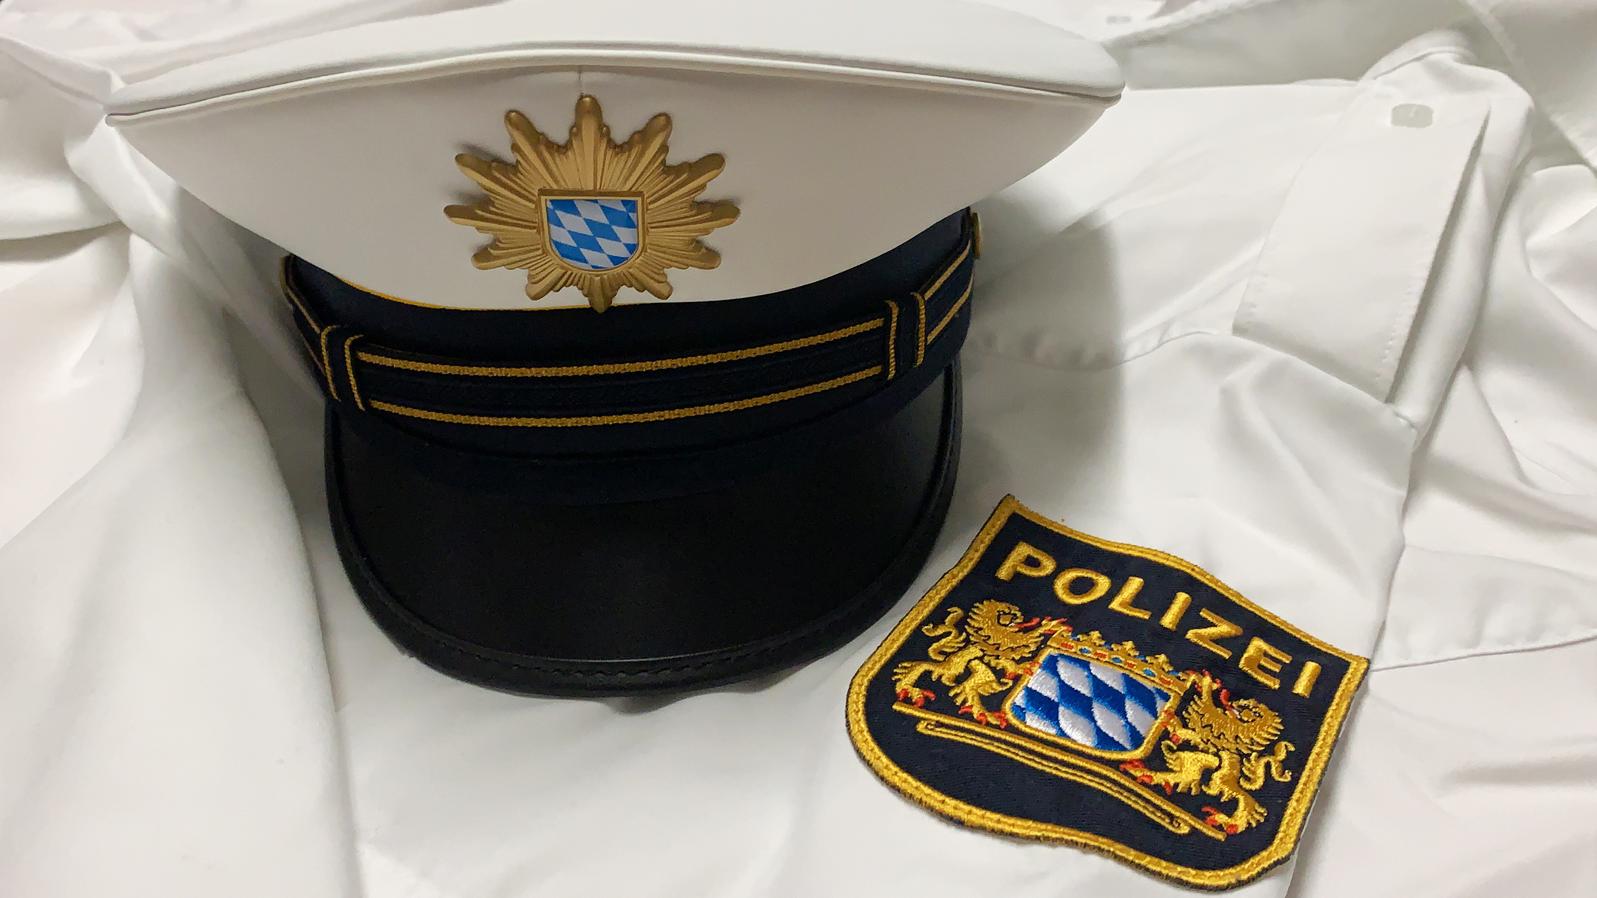 Polizeimütze und Emblem